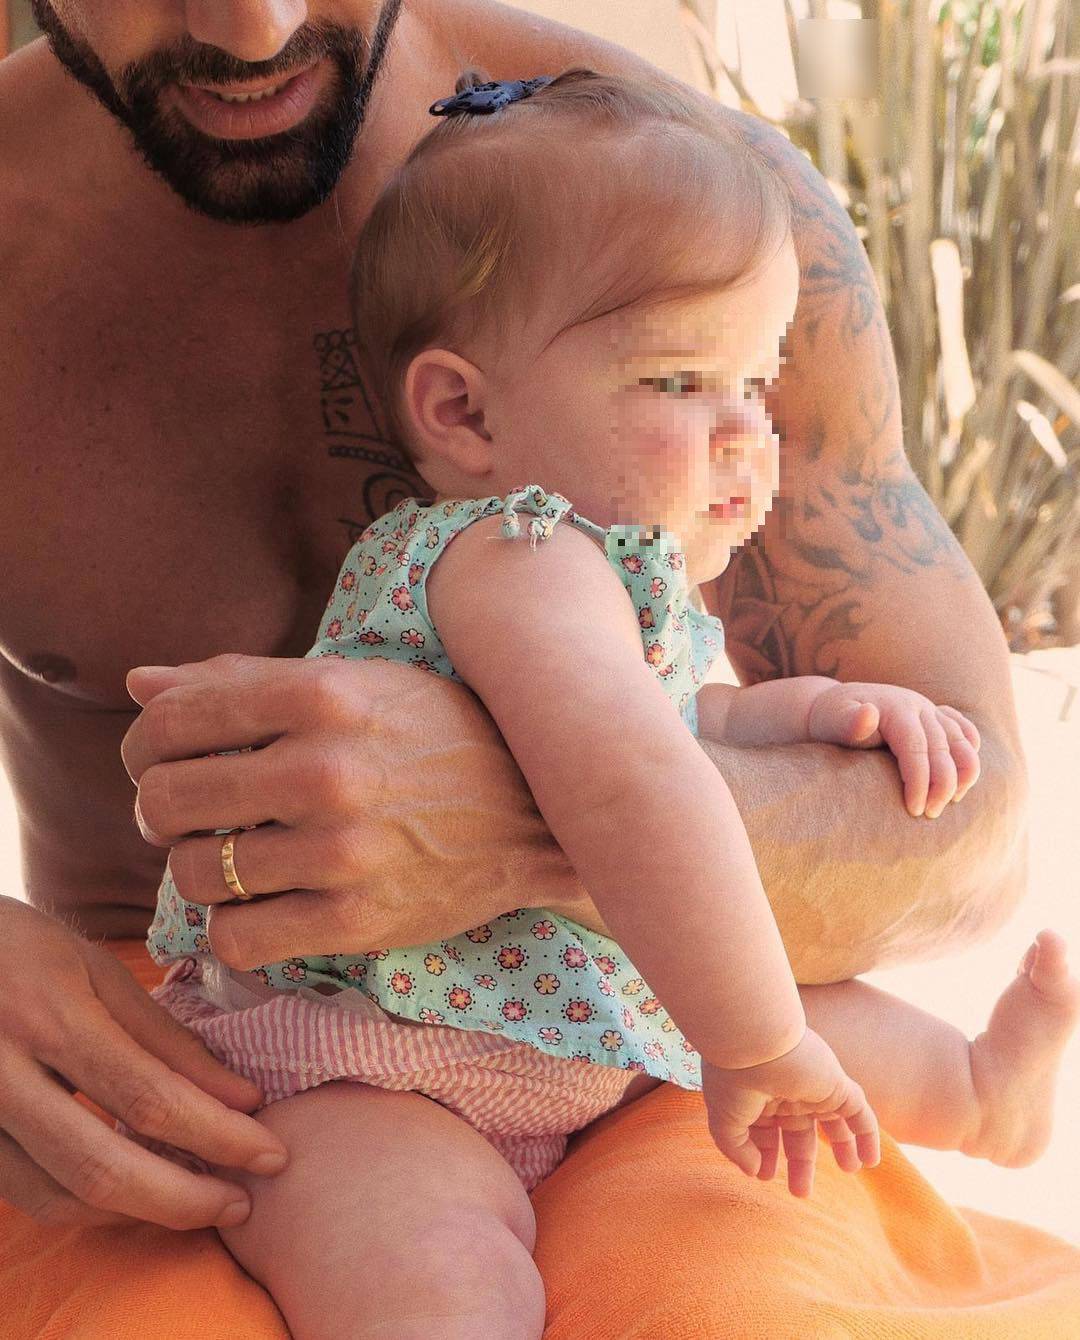 Ricky Martin upoznao je  muža preko Twittera, sad imaju djecu